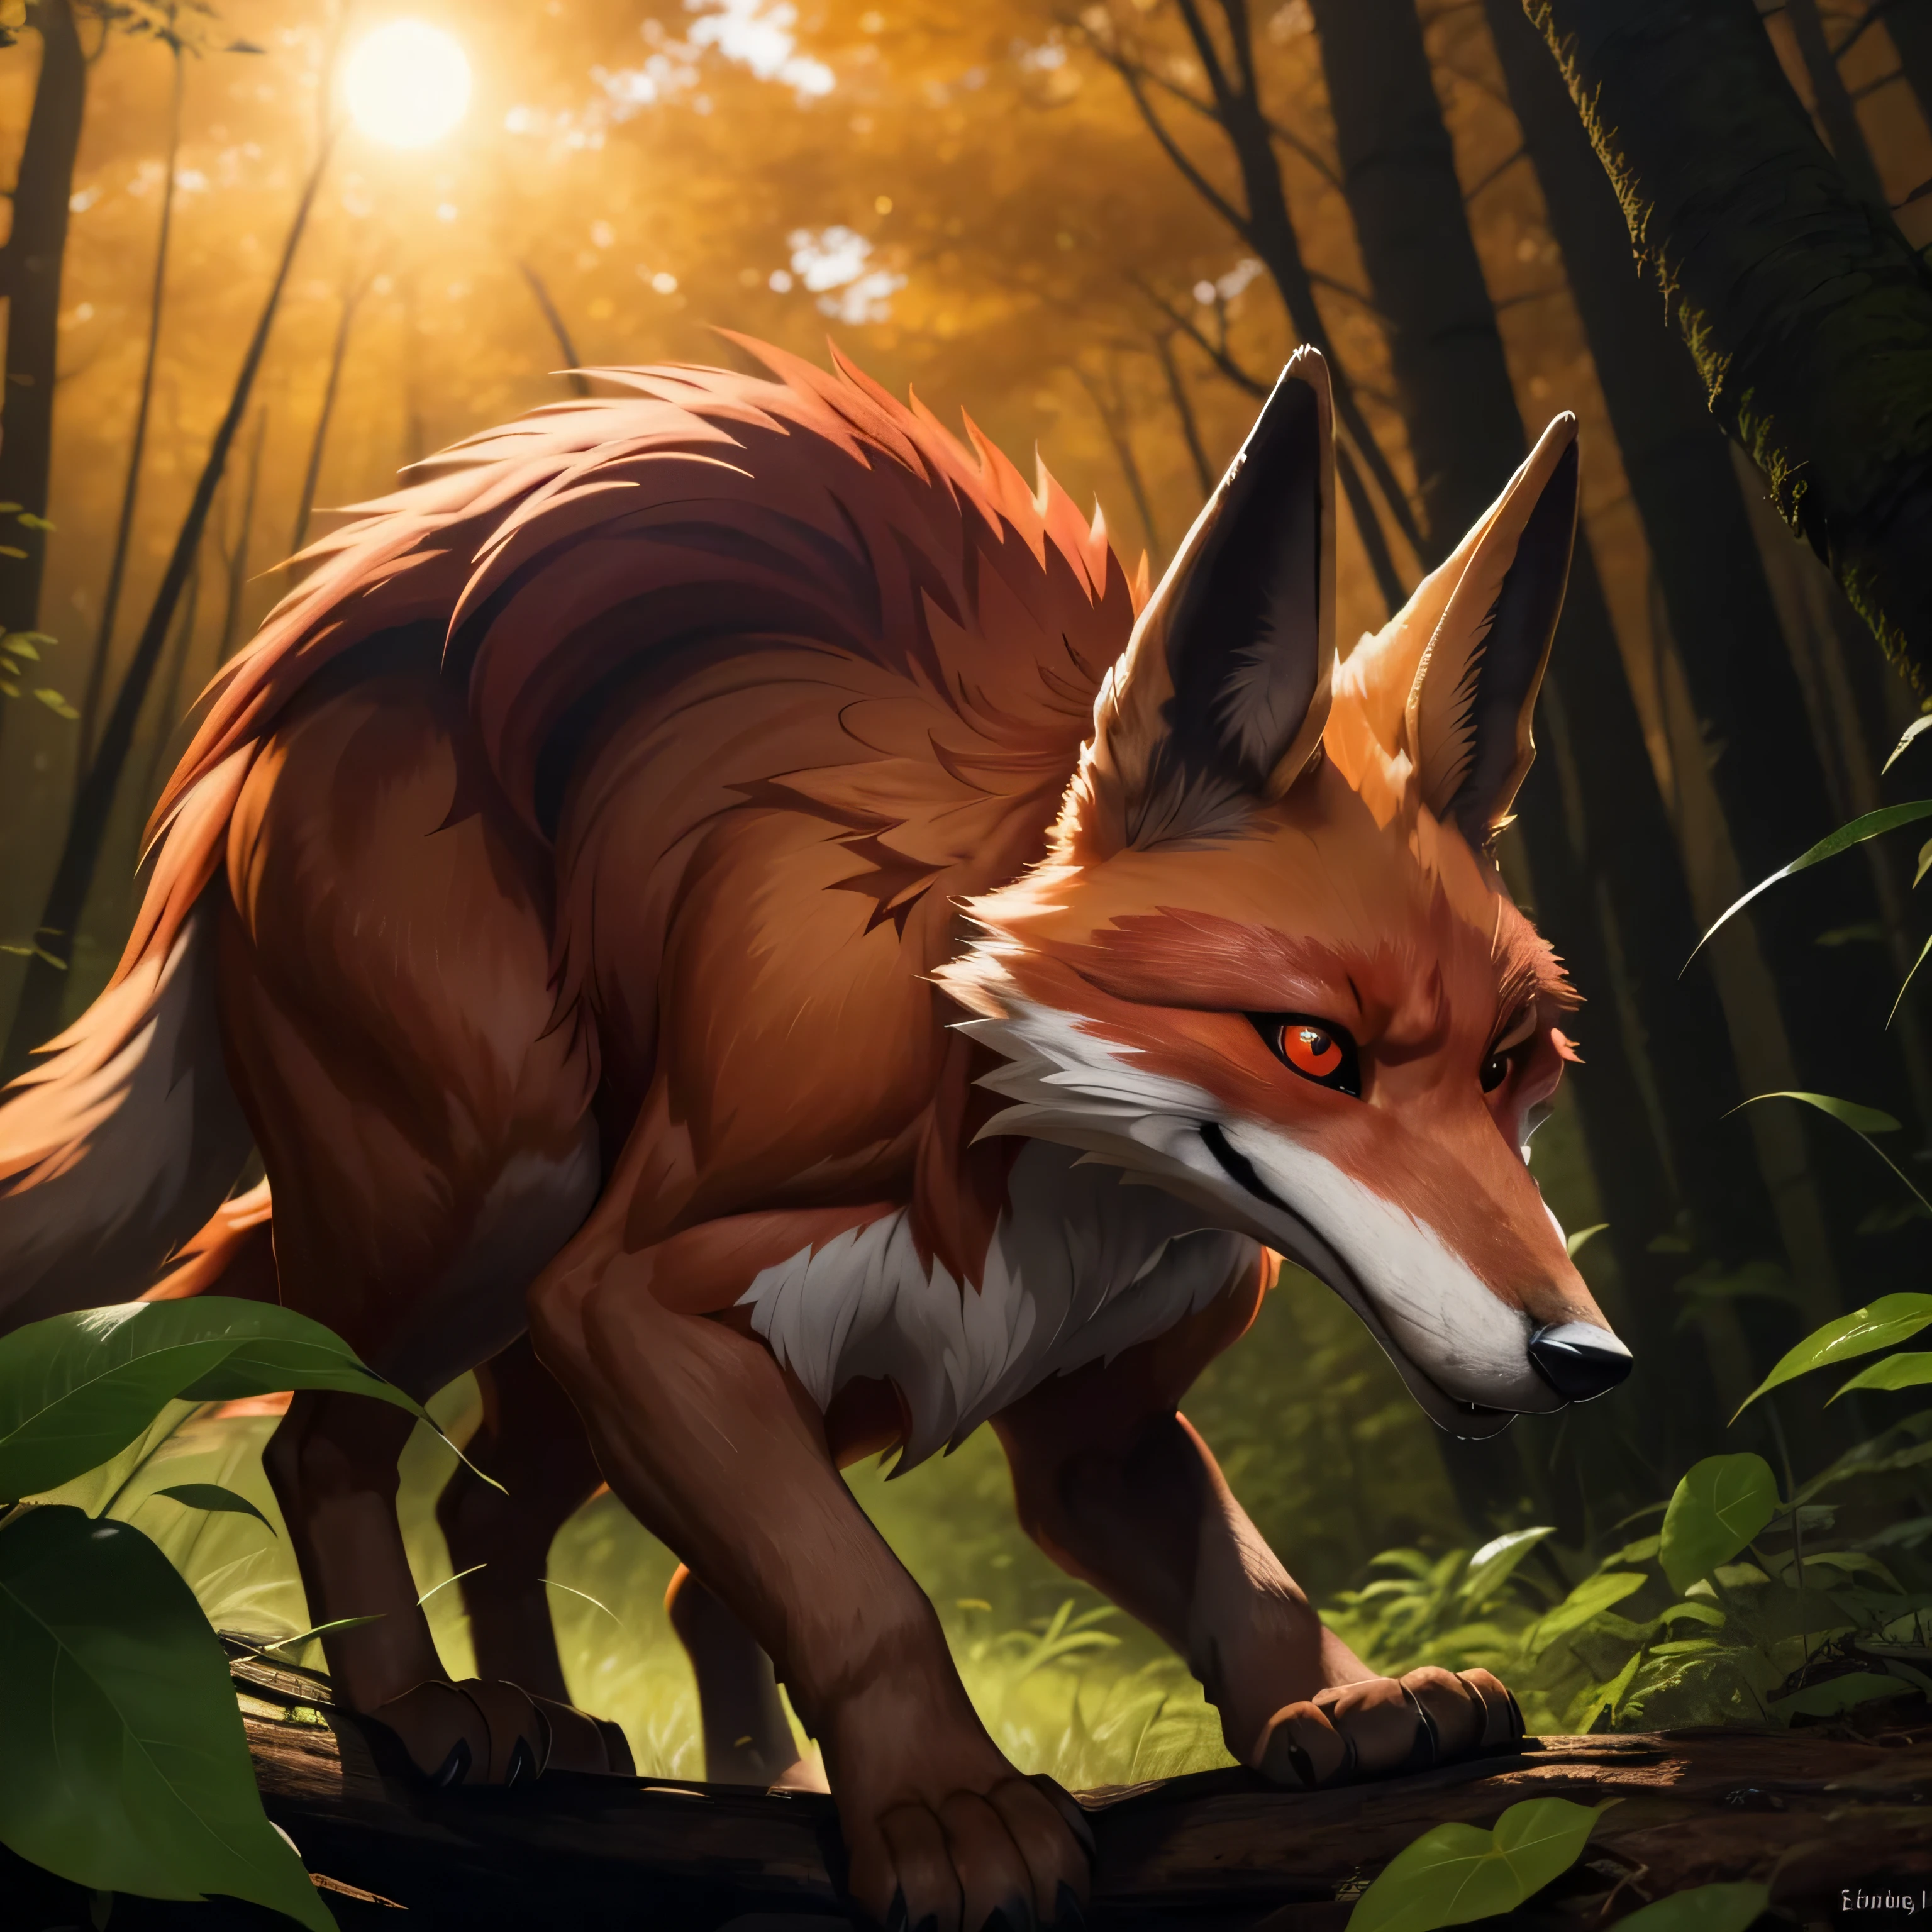 一隻毛皮有紫色部分的狐狸, (一隻有紅色毛皮部分的狐狸),

這隻狐狸光滑敏捷的身體裝飾著鮮豔的紅色皮毛, 與整體紅棕色外套完美融合. 太陽在它身後落下, 在森林地面投下長長的影子, 讓該區域沐浴在柔和的橙色光芒中. 狐狸歪著頭, 圓圓的臉被尖尖的耳朵和迷人的琥珀色眼睛所包圍. 其明亮, 彎曲的鼻子輕微抽動, 感知附近獵物的氣味. 森林裡充滿了蟋蟀的叫聲和樹葉的沙沙聲, 正如這優雅而